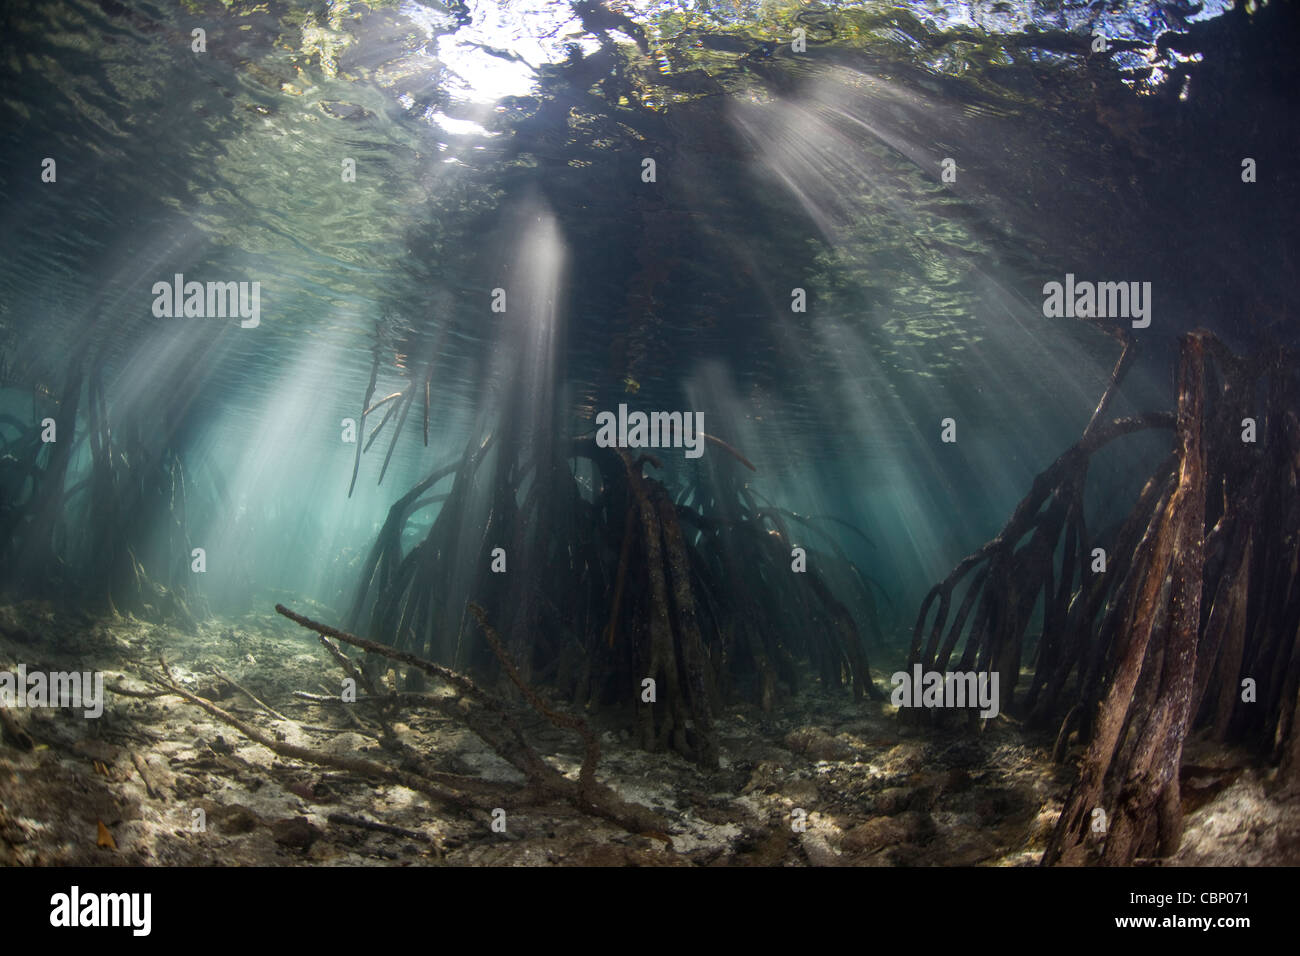 Los haces de luz penetran en las aguas de un bosque de manglar. El prop las raíces proveen hábitat vivero de peces e invertebrados. Foto de stock